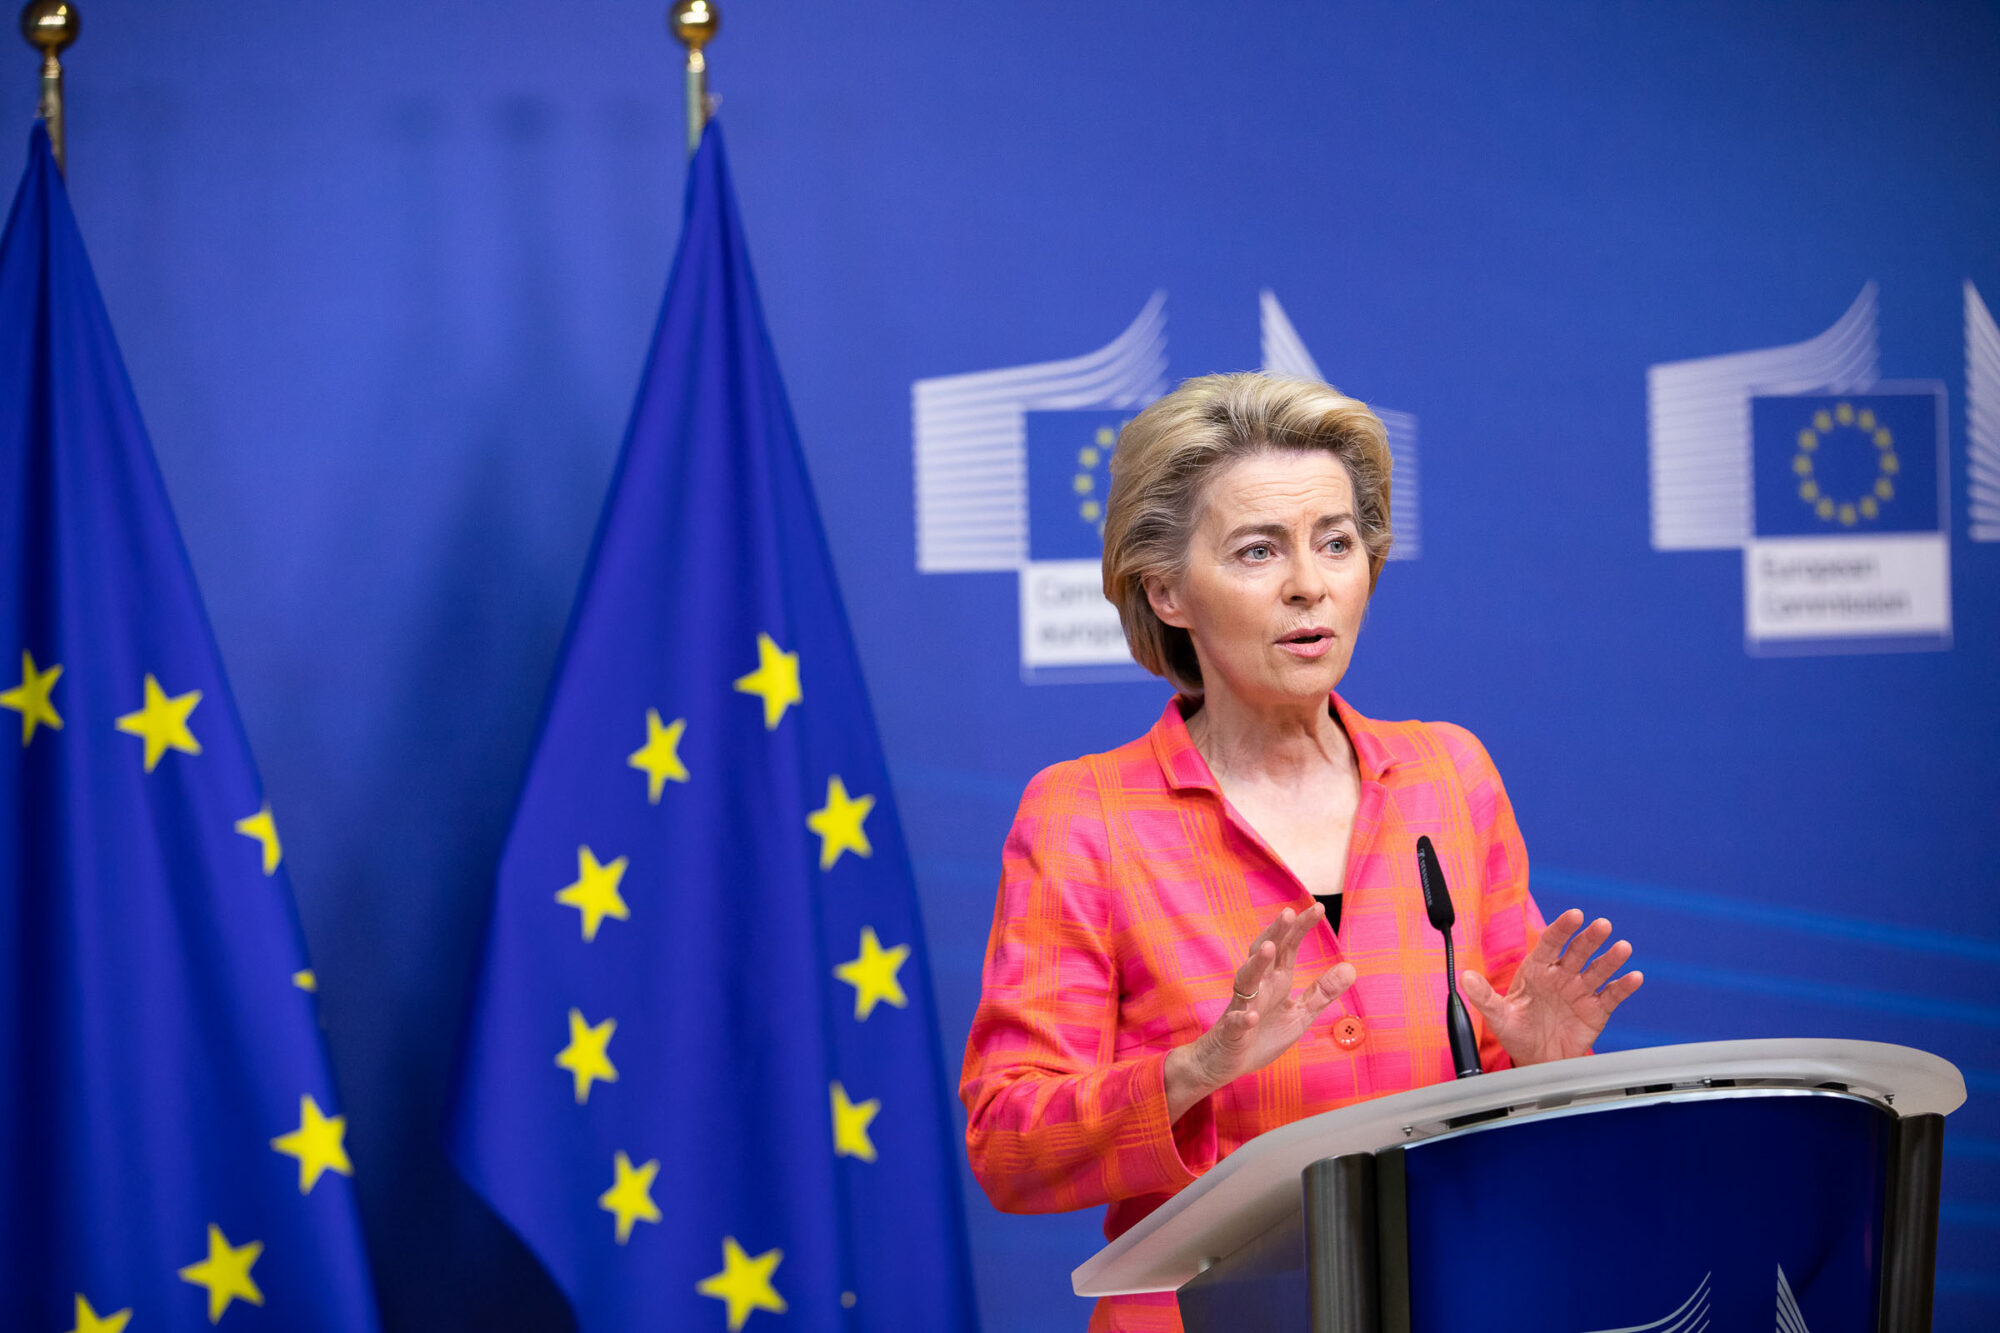 Statement of Ursula von der Leyen, President of the European Commission